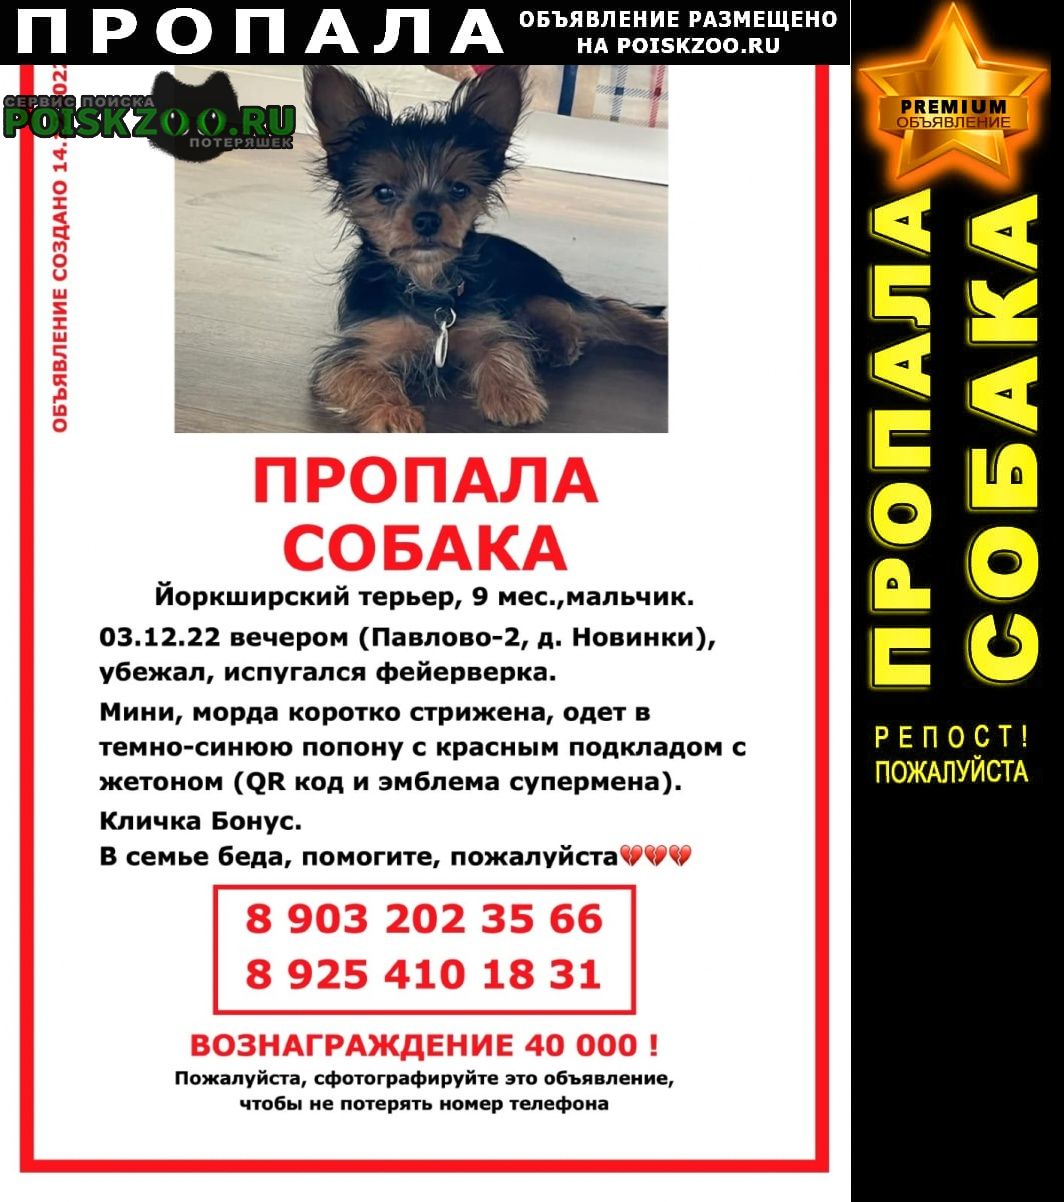 Пропала собака кобель мо, д. новинки, павлово-2 Красногорск